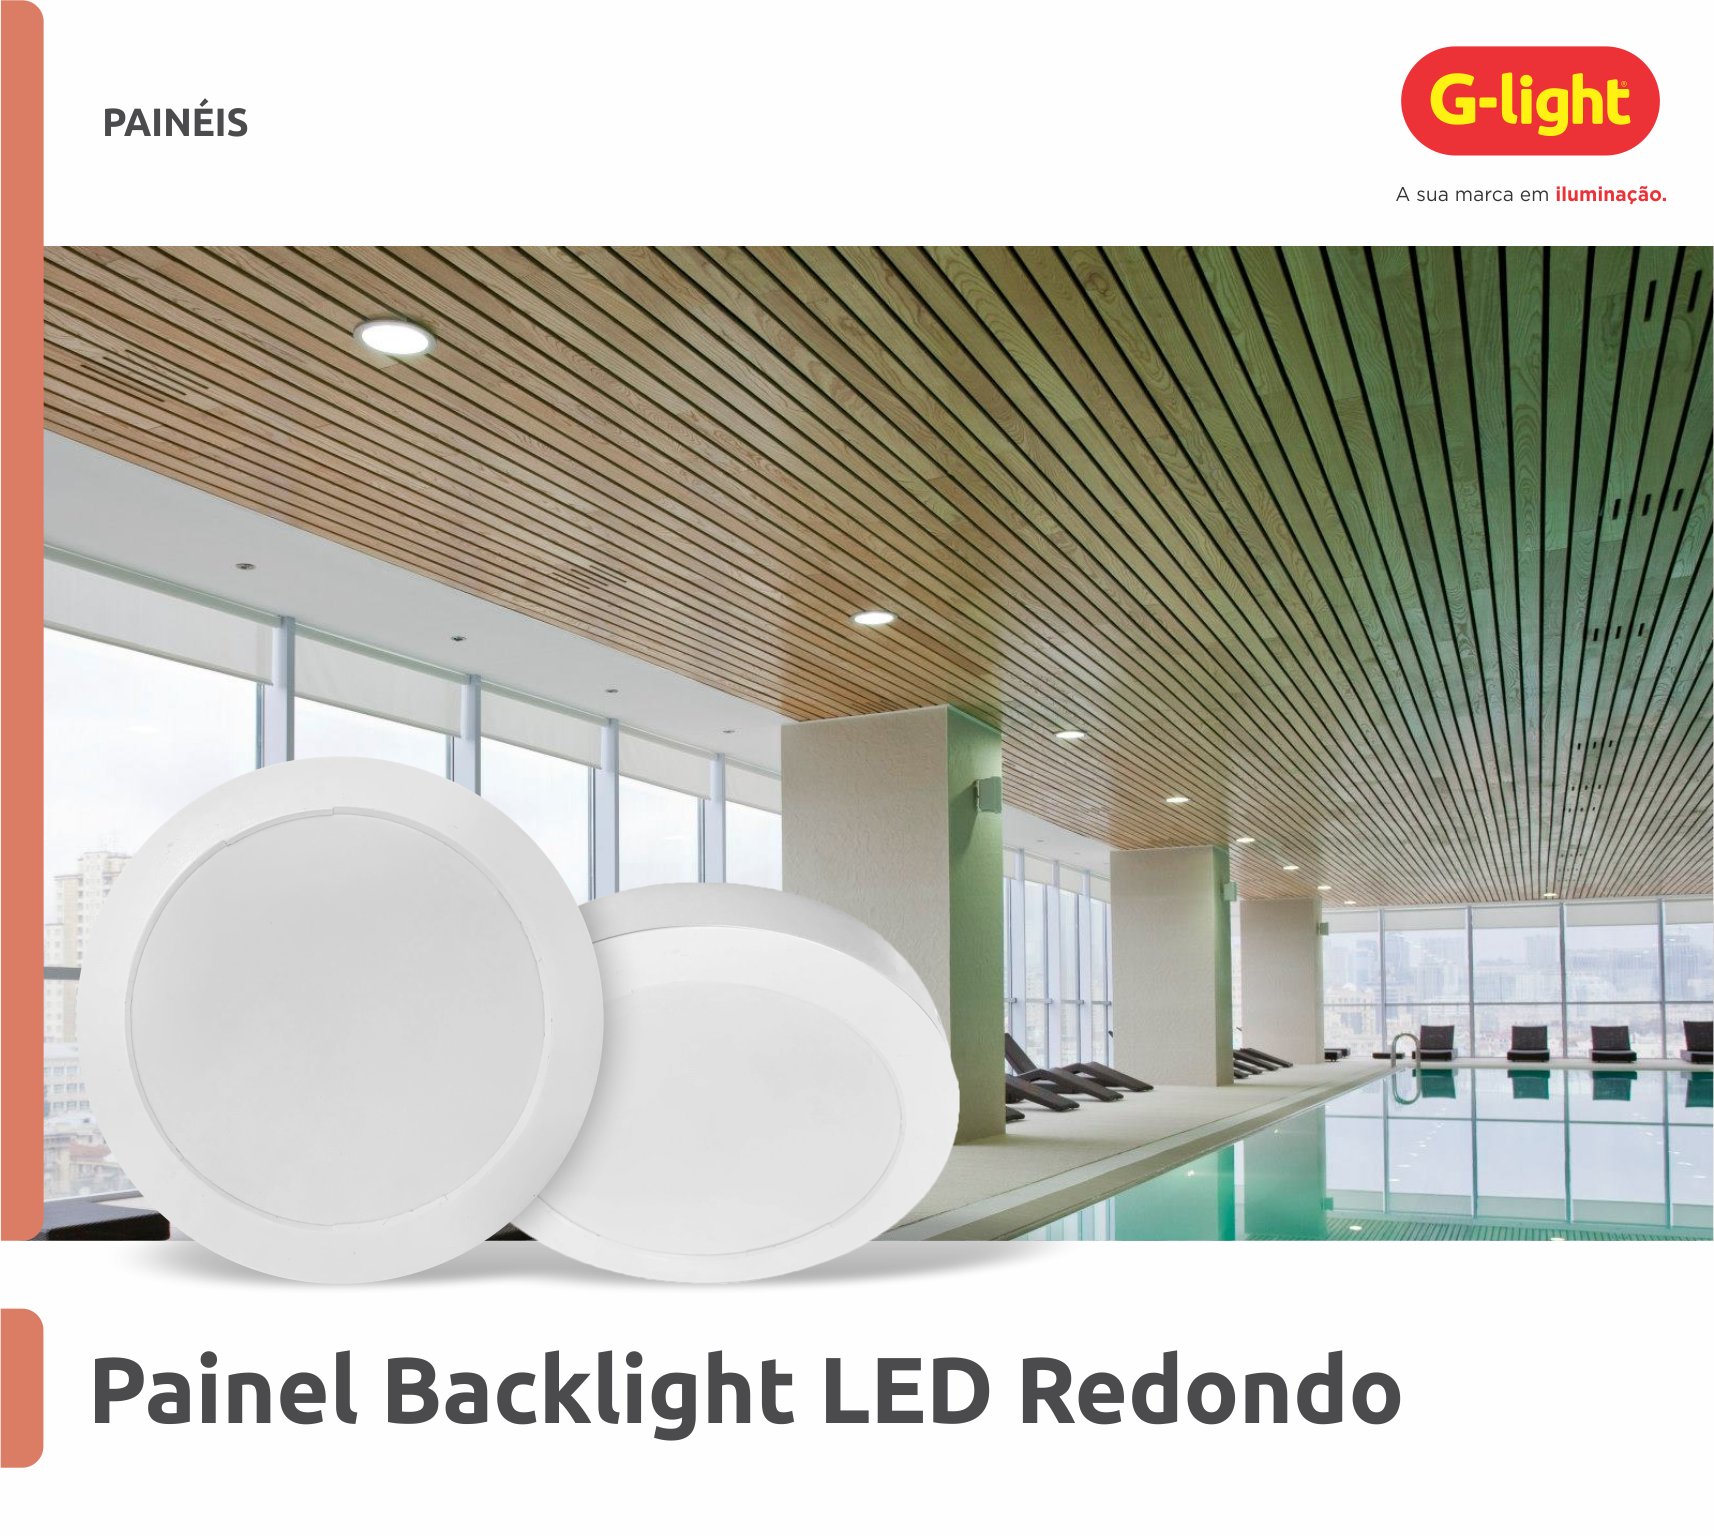 Painel Backlight LED Redondo